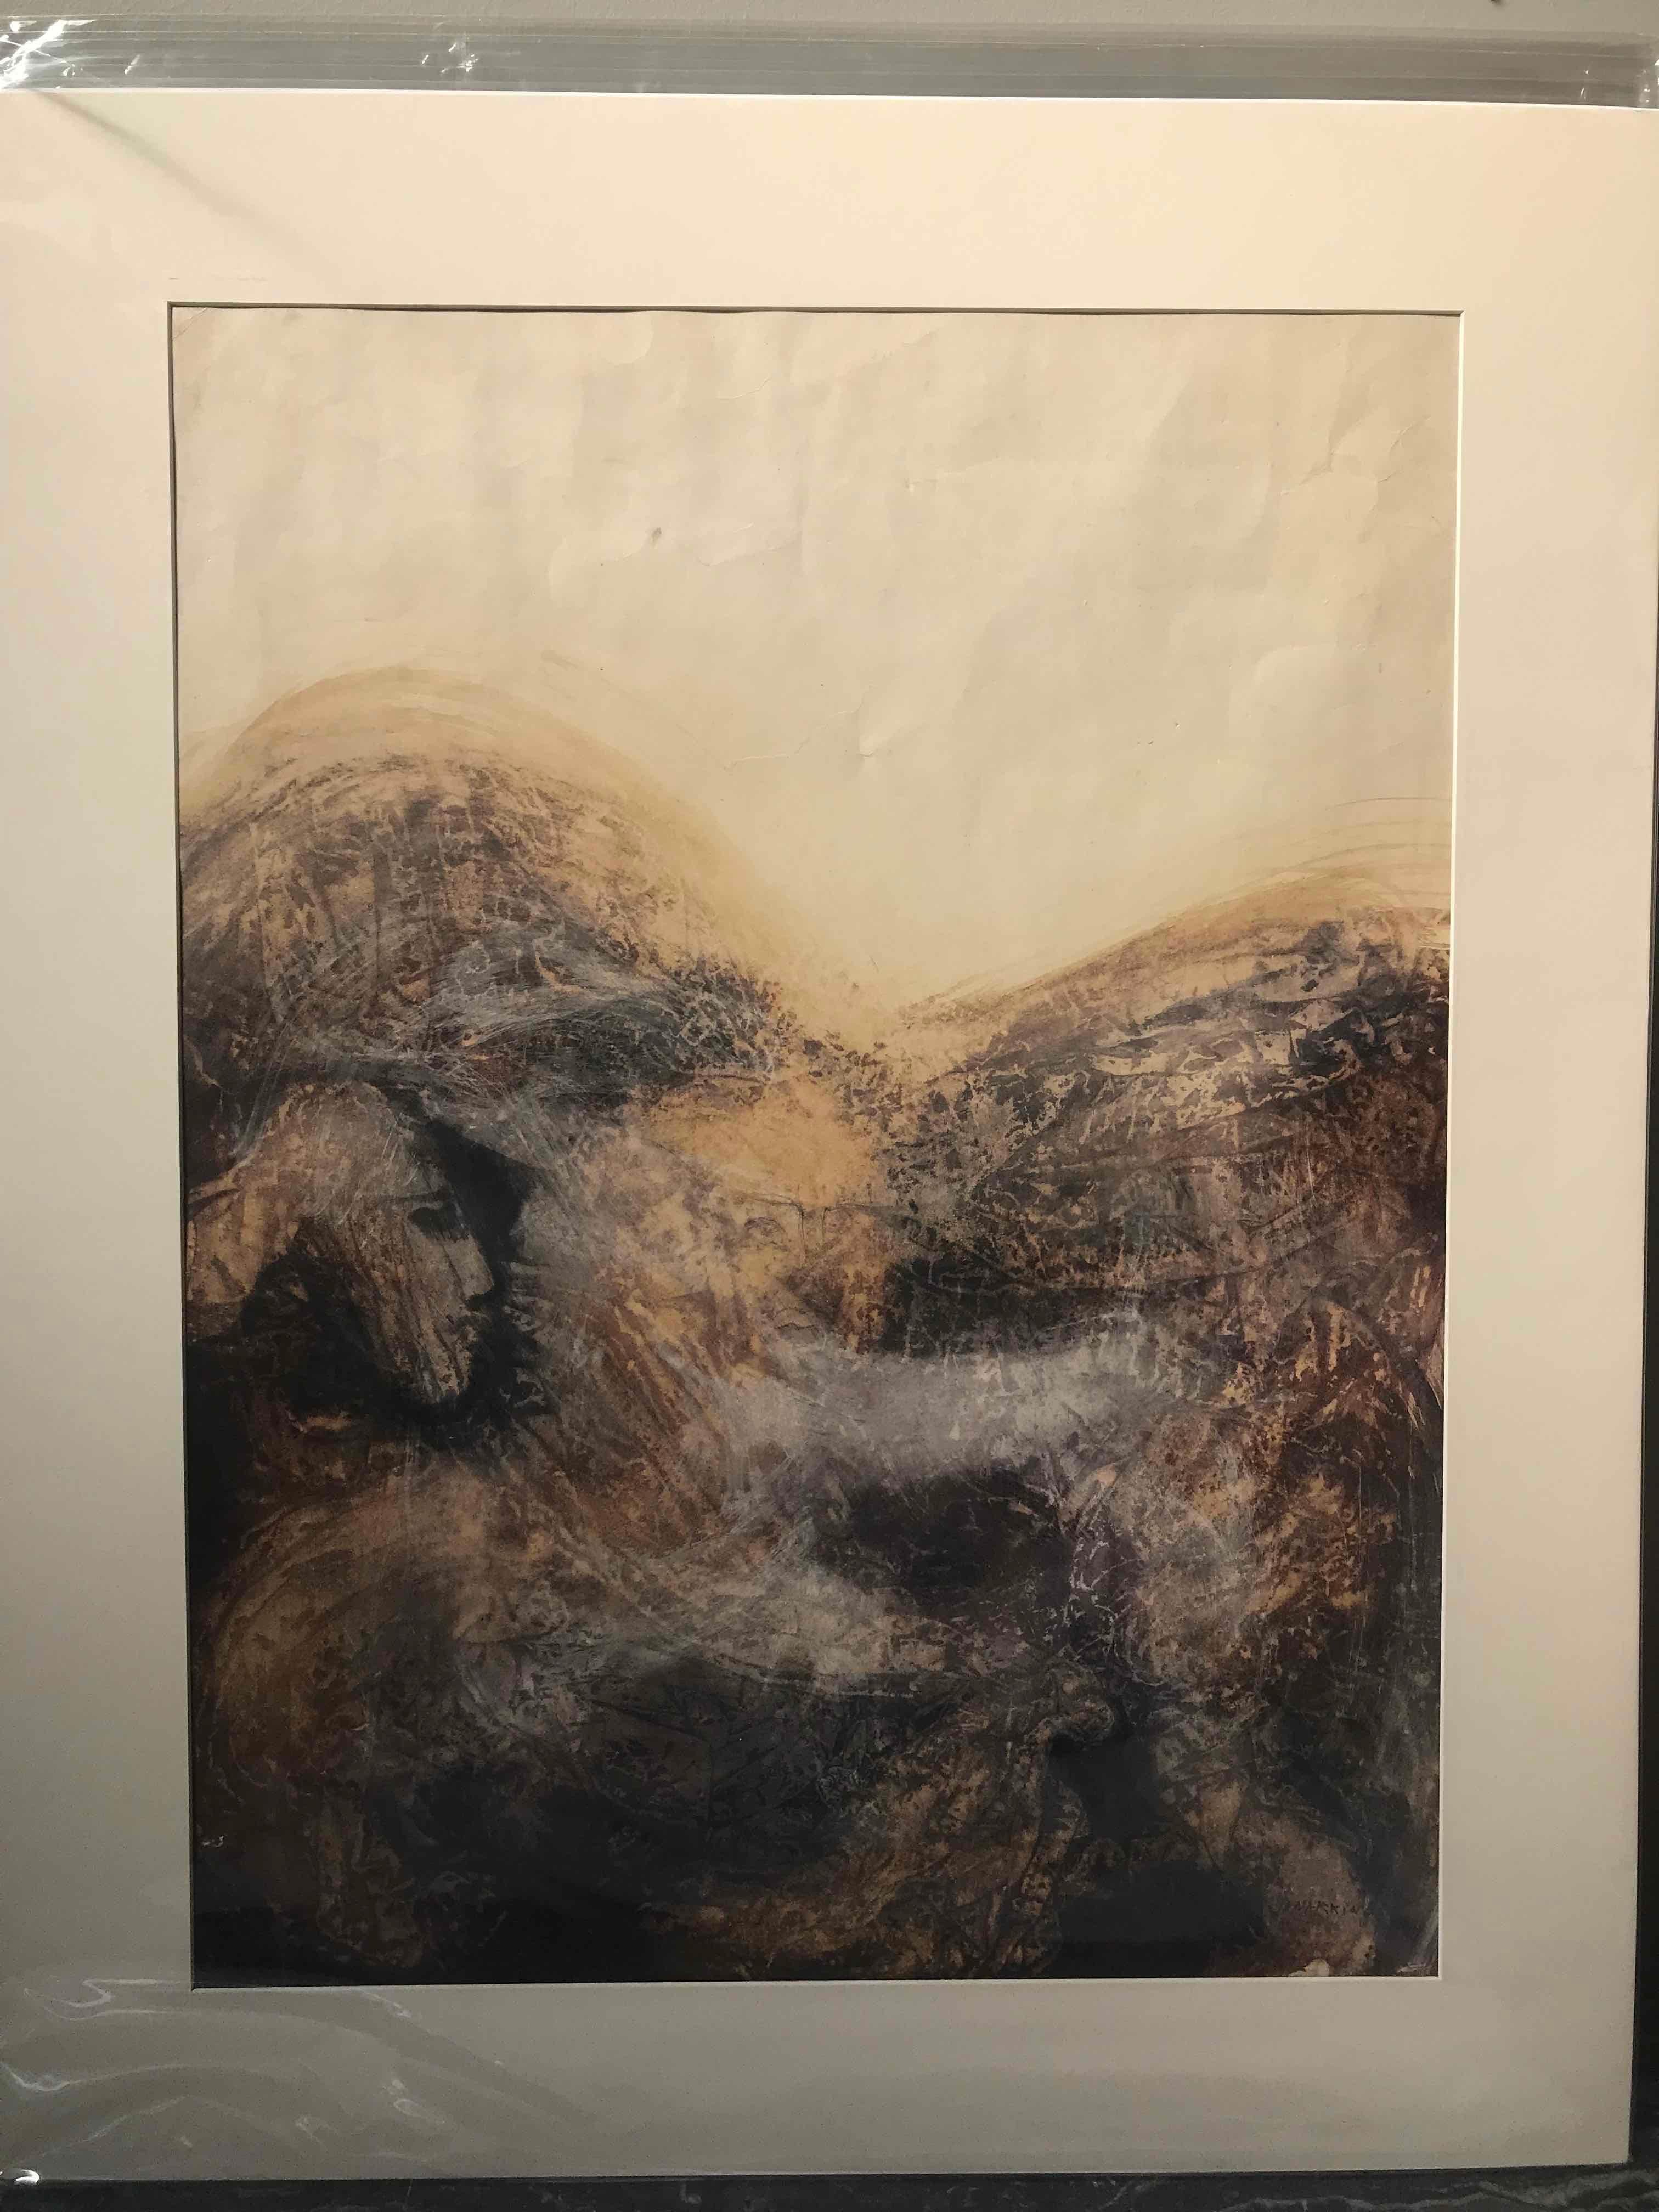 Aquarelle anglaise du début du 20e siècle avec une palette de couleurs terreuses composée de bruns roux profonds, de fusains fumés et de blancs crémeux. Le sujet et la qualité du coup de pinceau évoquent un Chagall très abstrait.

Angleterre, vers